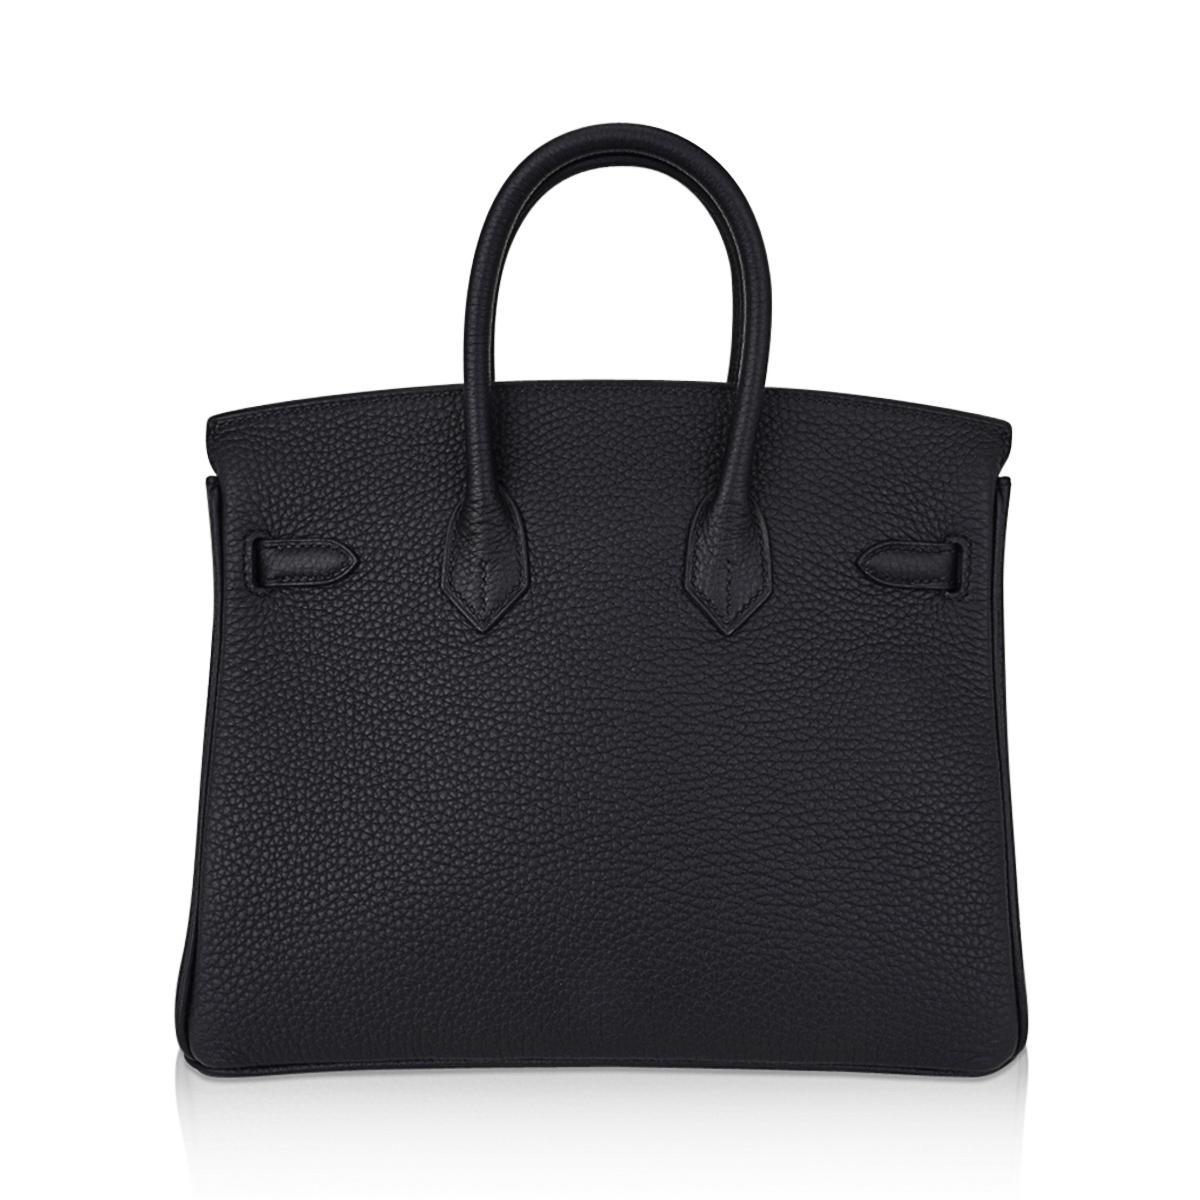 Hermes Birkin 25 Black Bag Gold Hardware Togo Leather 4